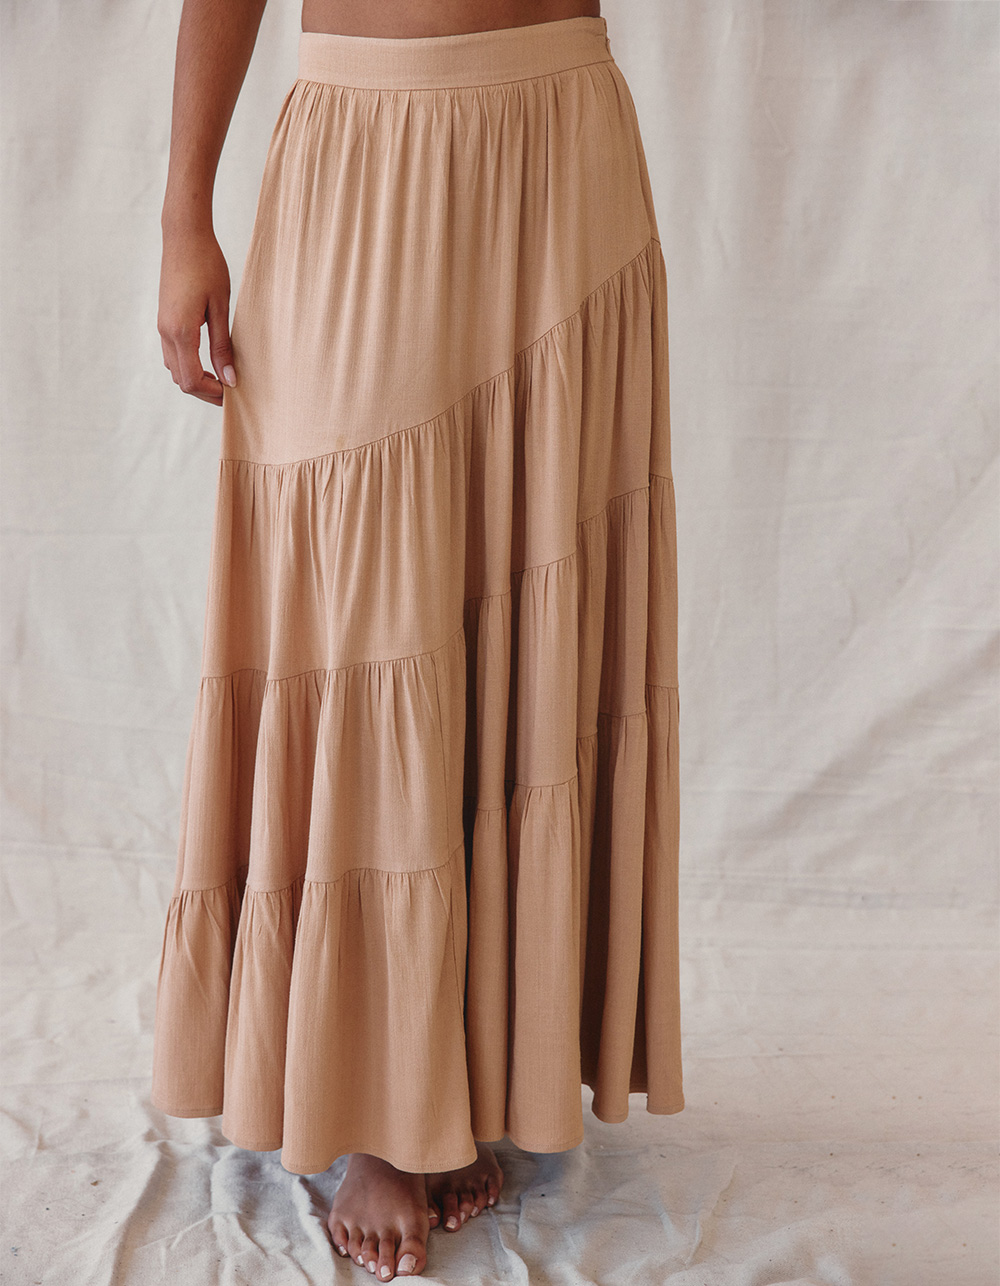 WEST OF MELROSE Ruffle Asymmetrical Womens Maxi Skirt - TAN | Tillys